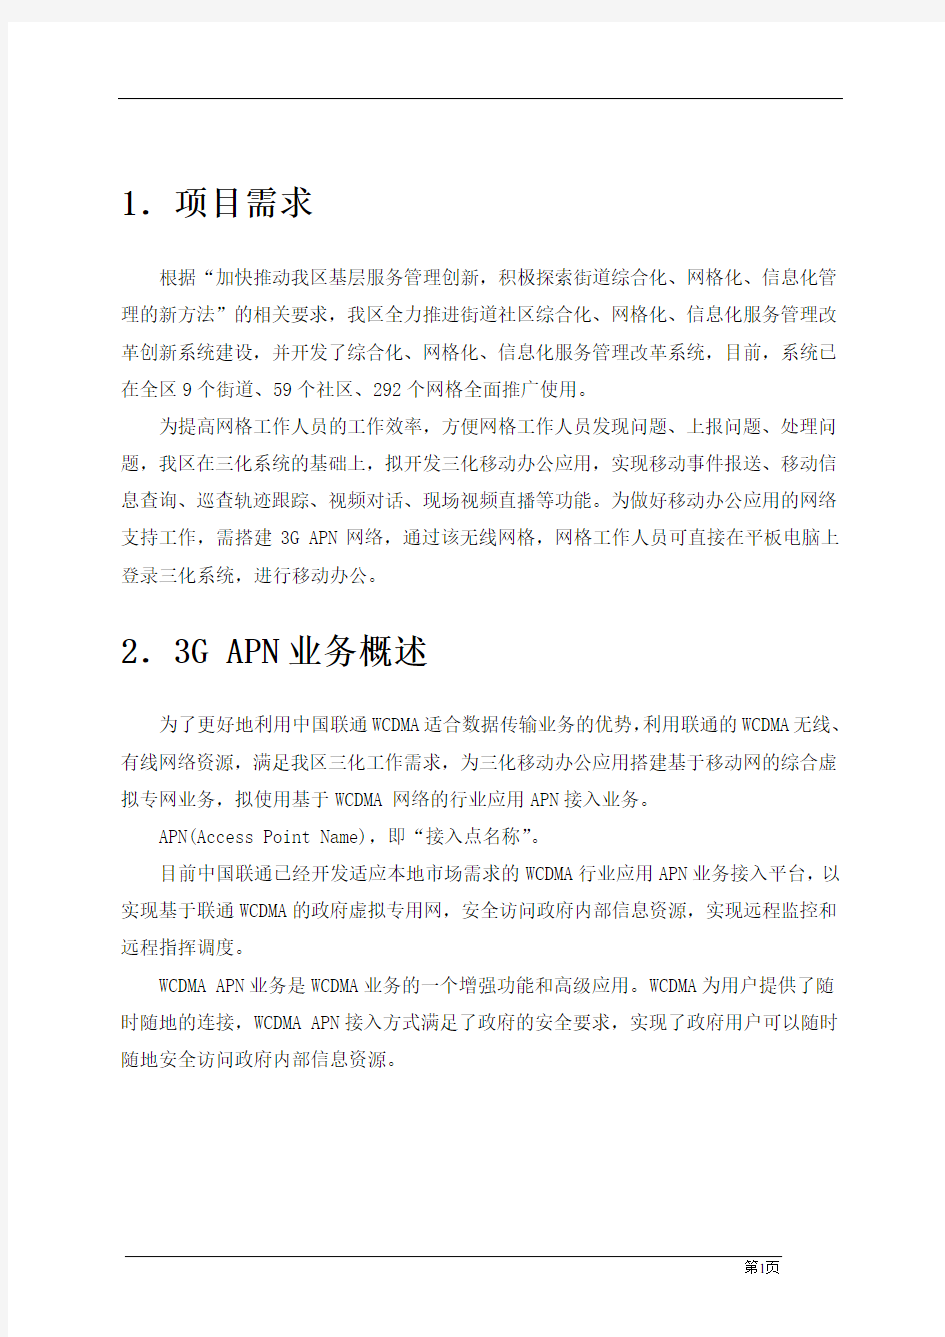 中国联通“三化”服务管理系统移动办公应用3G APN网络租赁项目方案